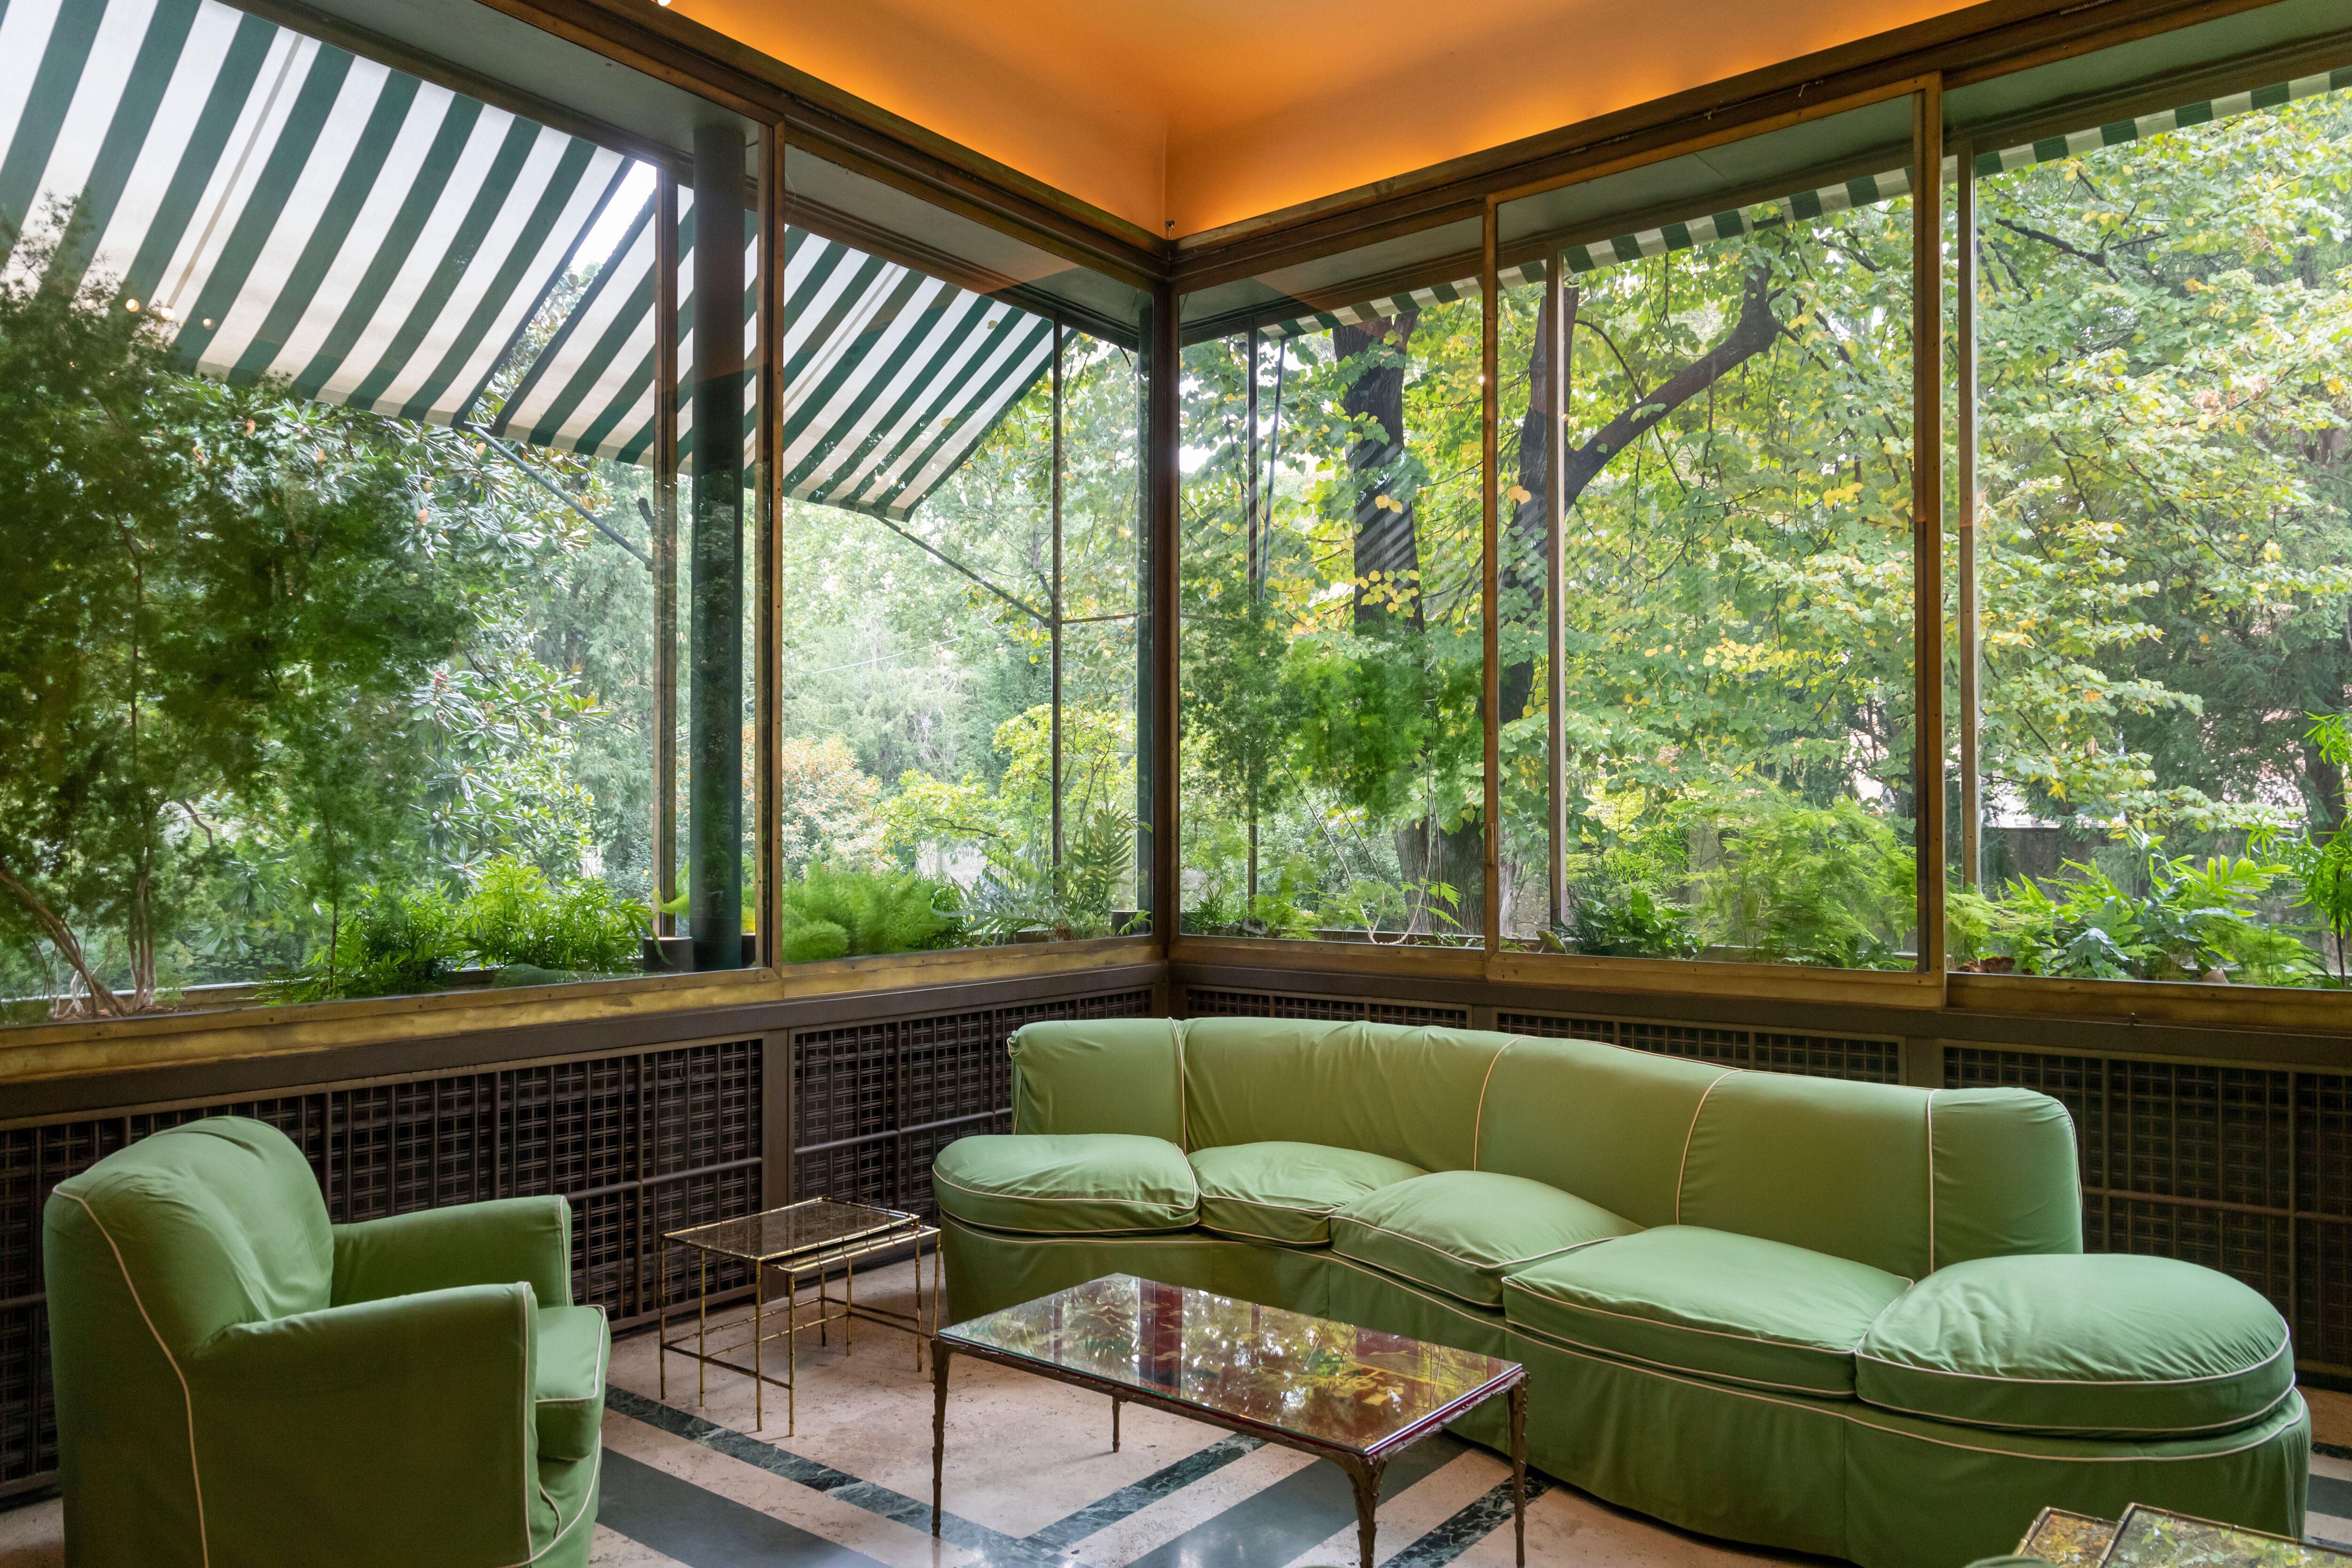 El invernadero, con sus muros de vidrio transparente que dan al jardín y su pavimento de travertino y mármol verde.